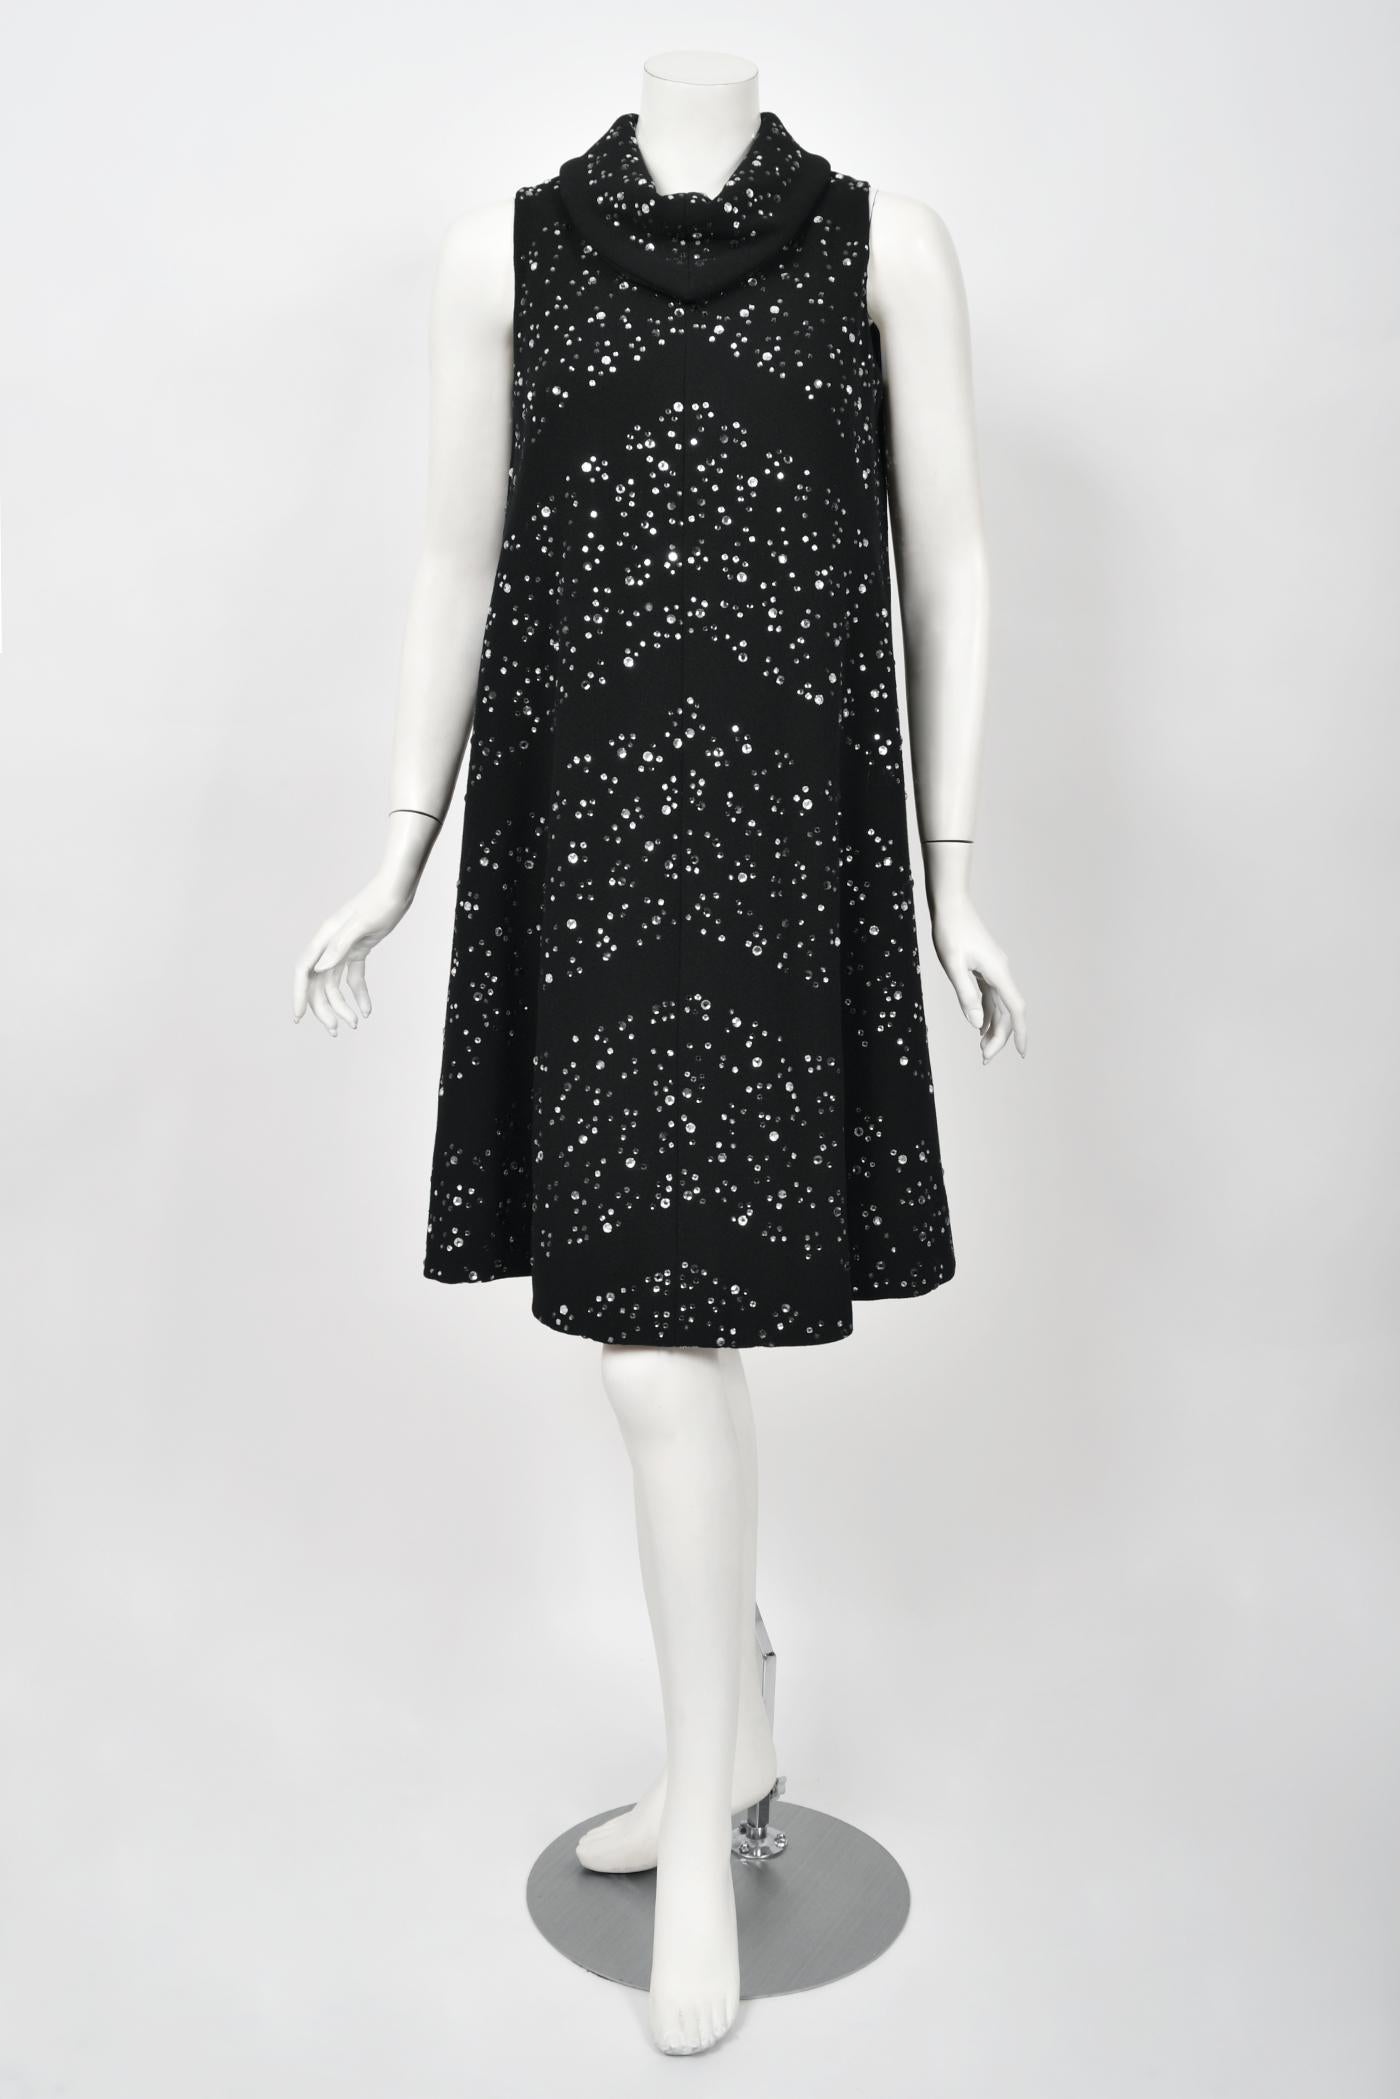 Une robe de cocktail Pauline Trigère exceptionnellement chic et totalement intemporelle datant du milieu des années 1960. À cette époque, le nom de Pauline Trigère fait partie des excès glamour de la mode hollywoodienne. Sa confection exquise et ses